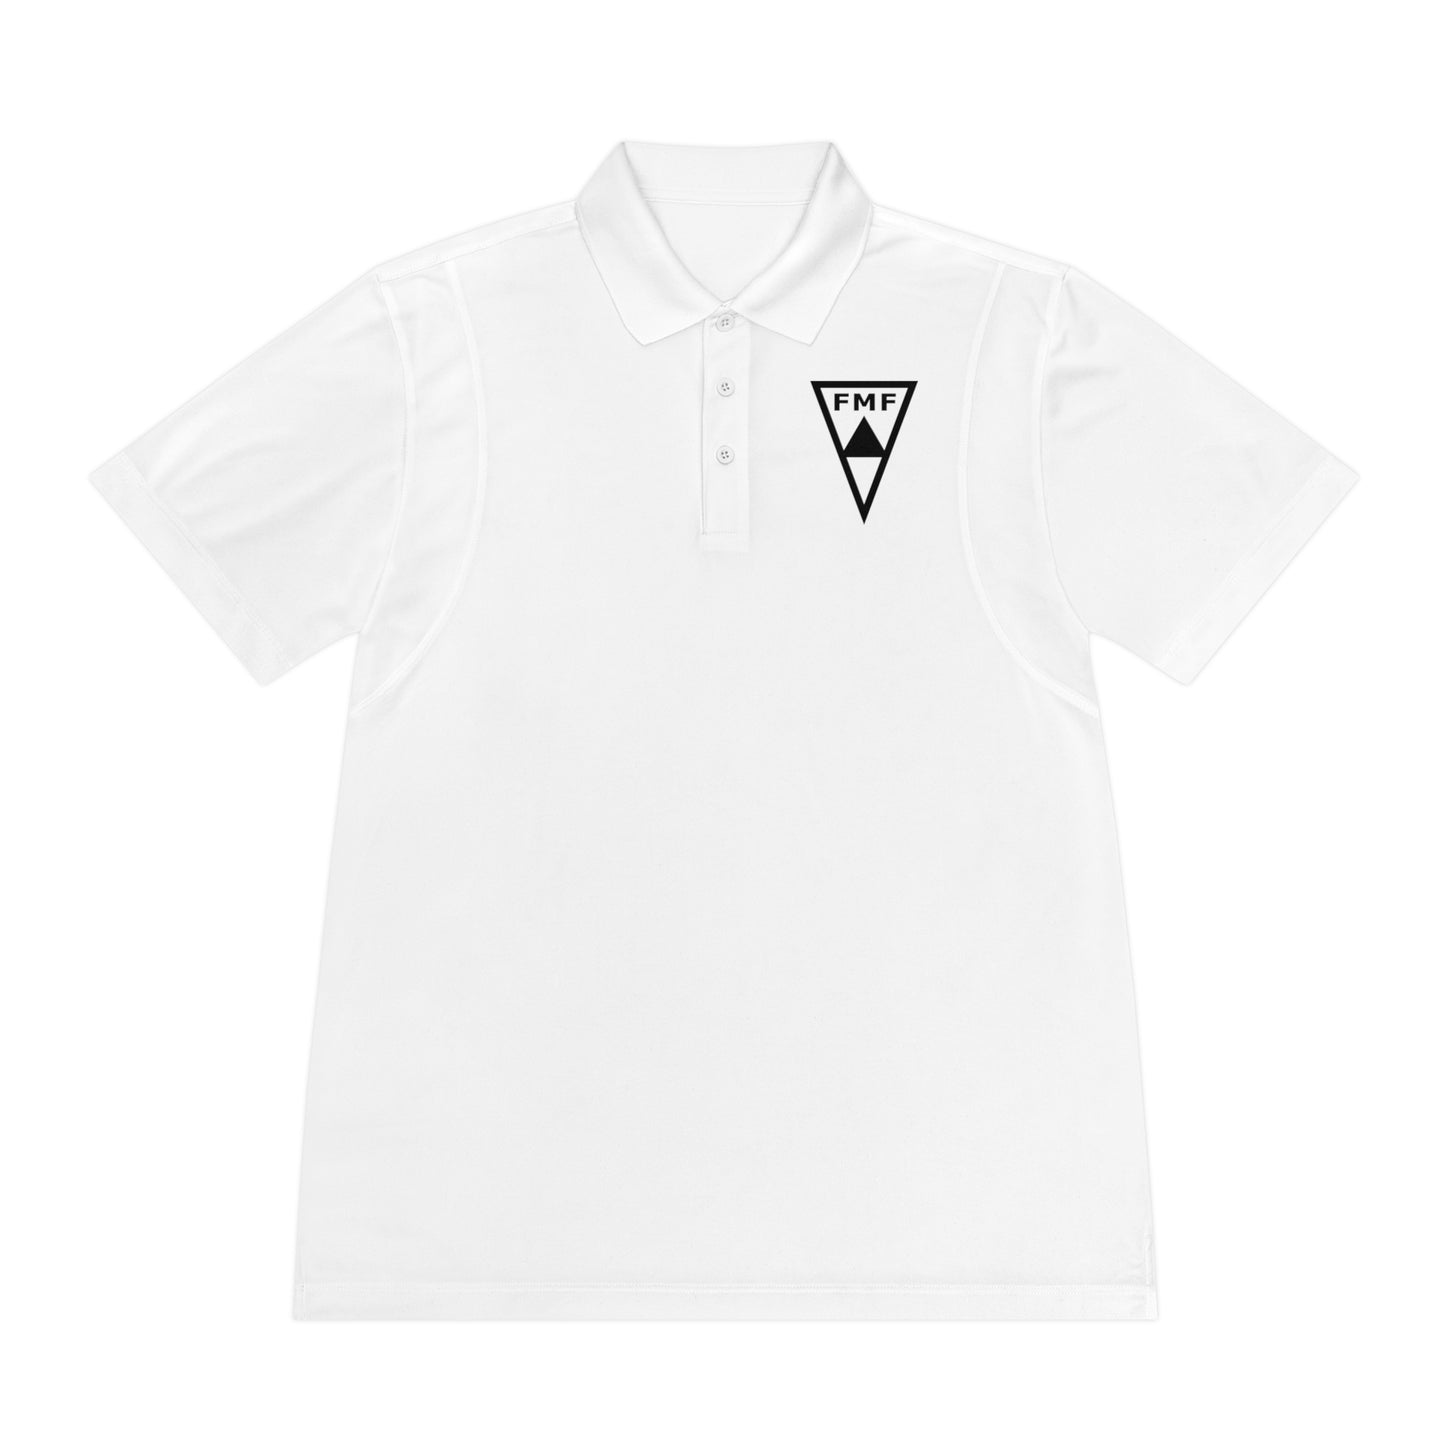 FMF - Federação Mineira de Futebol Men's Sport Polo Shirt